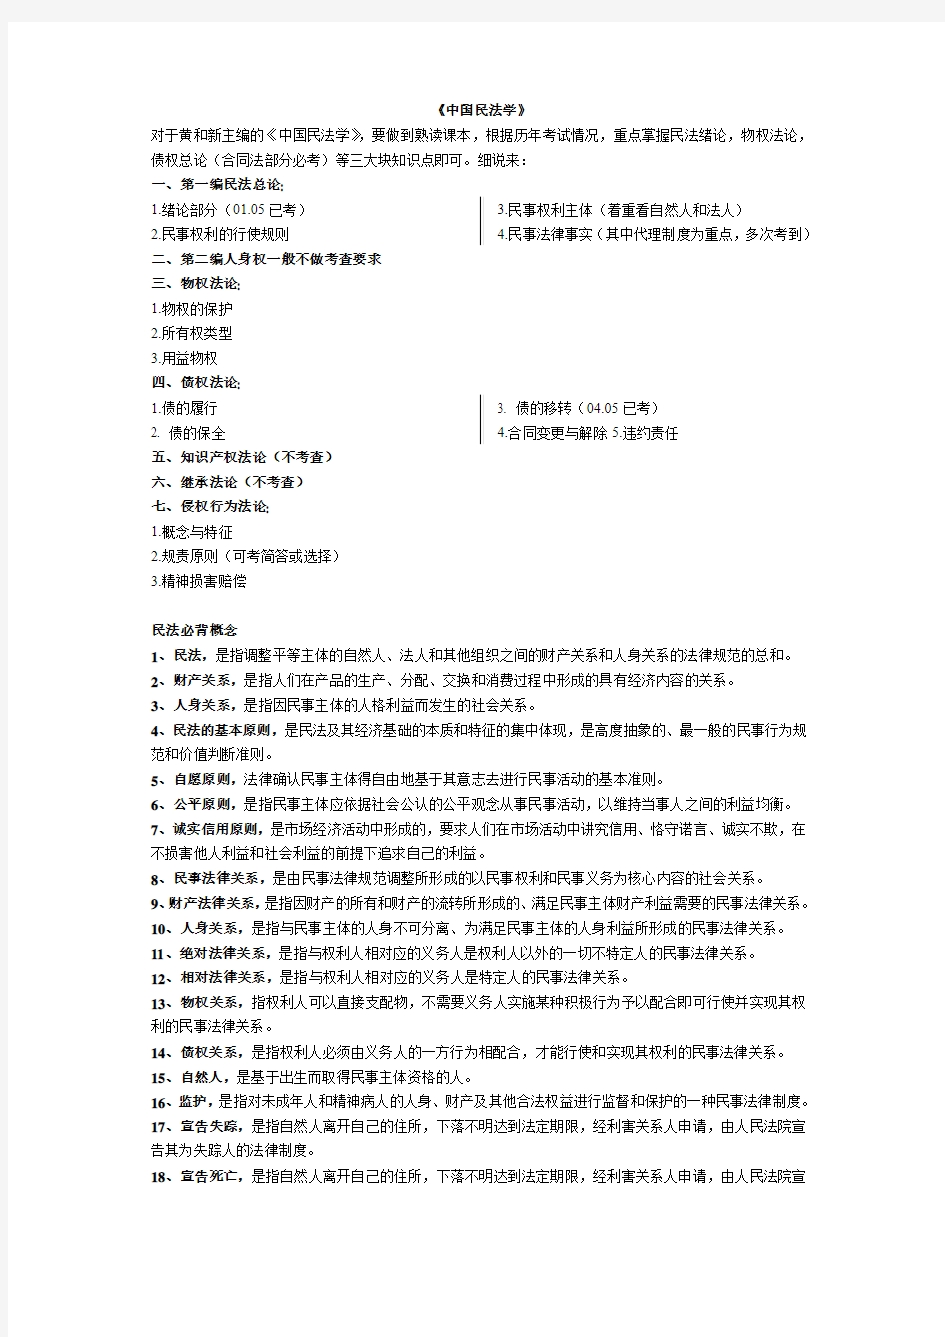 南京师范大学法学院考研——(黄和新)民法——资料整理